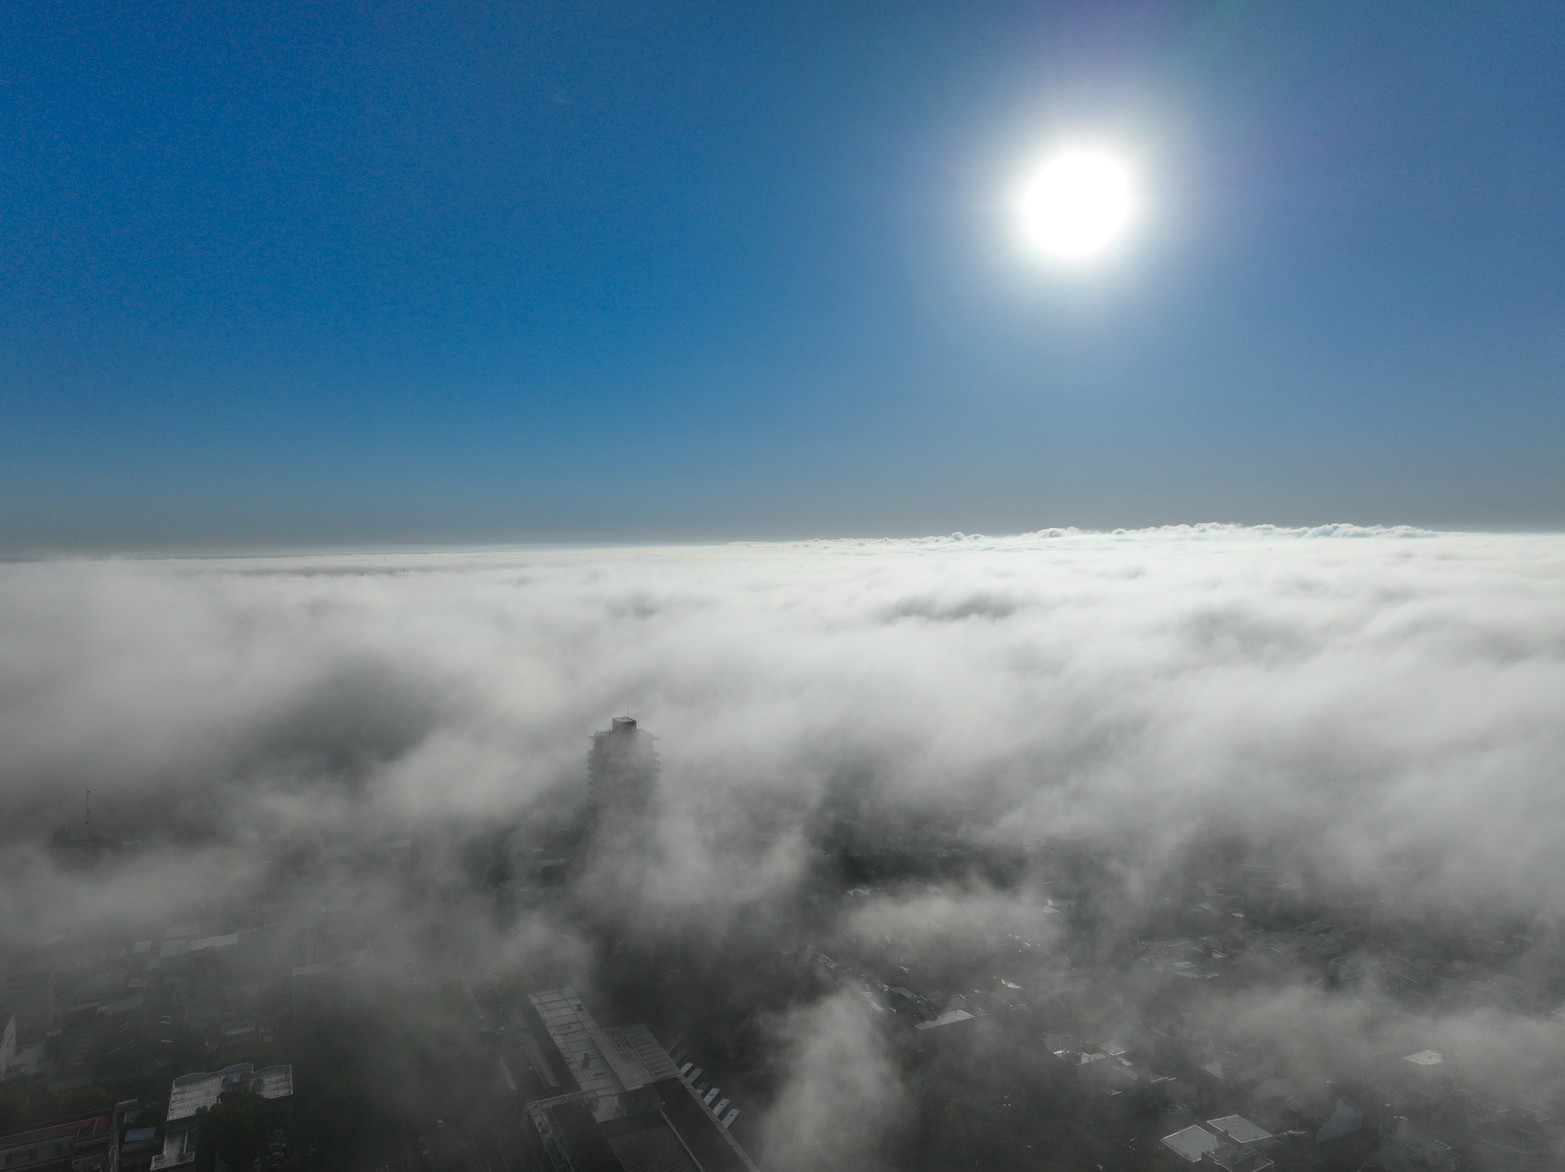 La niebla afectó a gran parte de la ciudad de Santa Fe. Crédito: Fernando Nicola